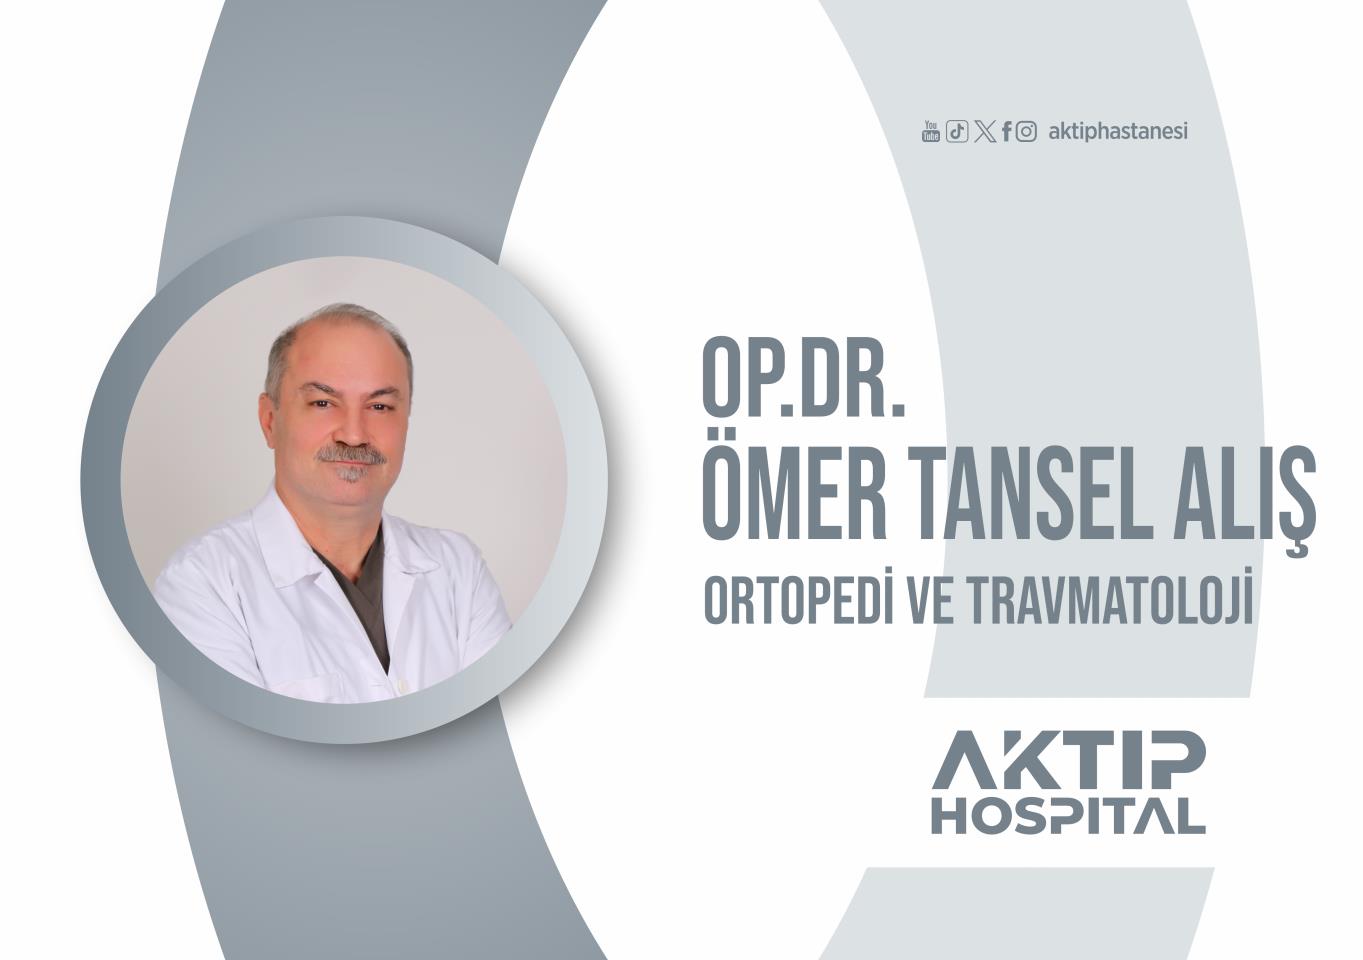 Op. Dr. Ömer Tansel ALIŞ